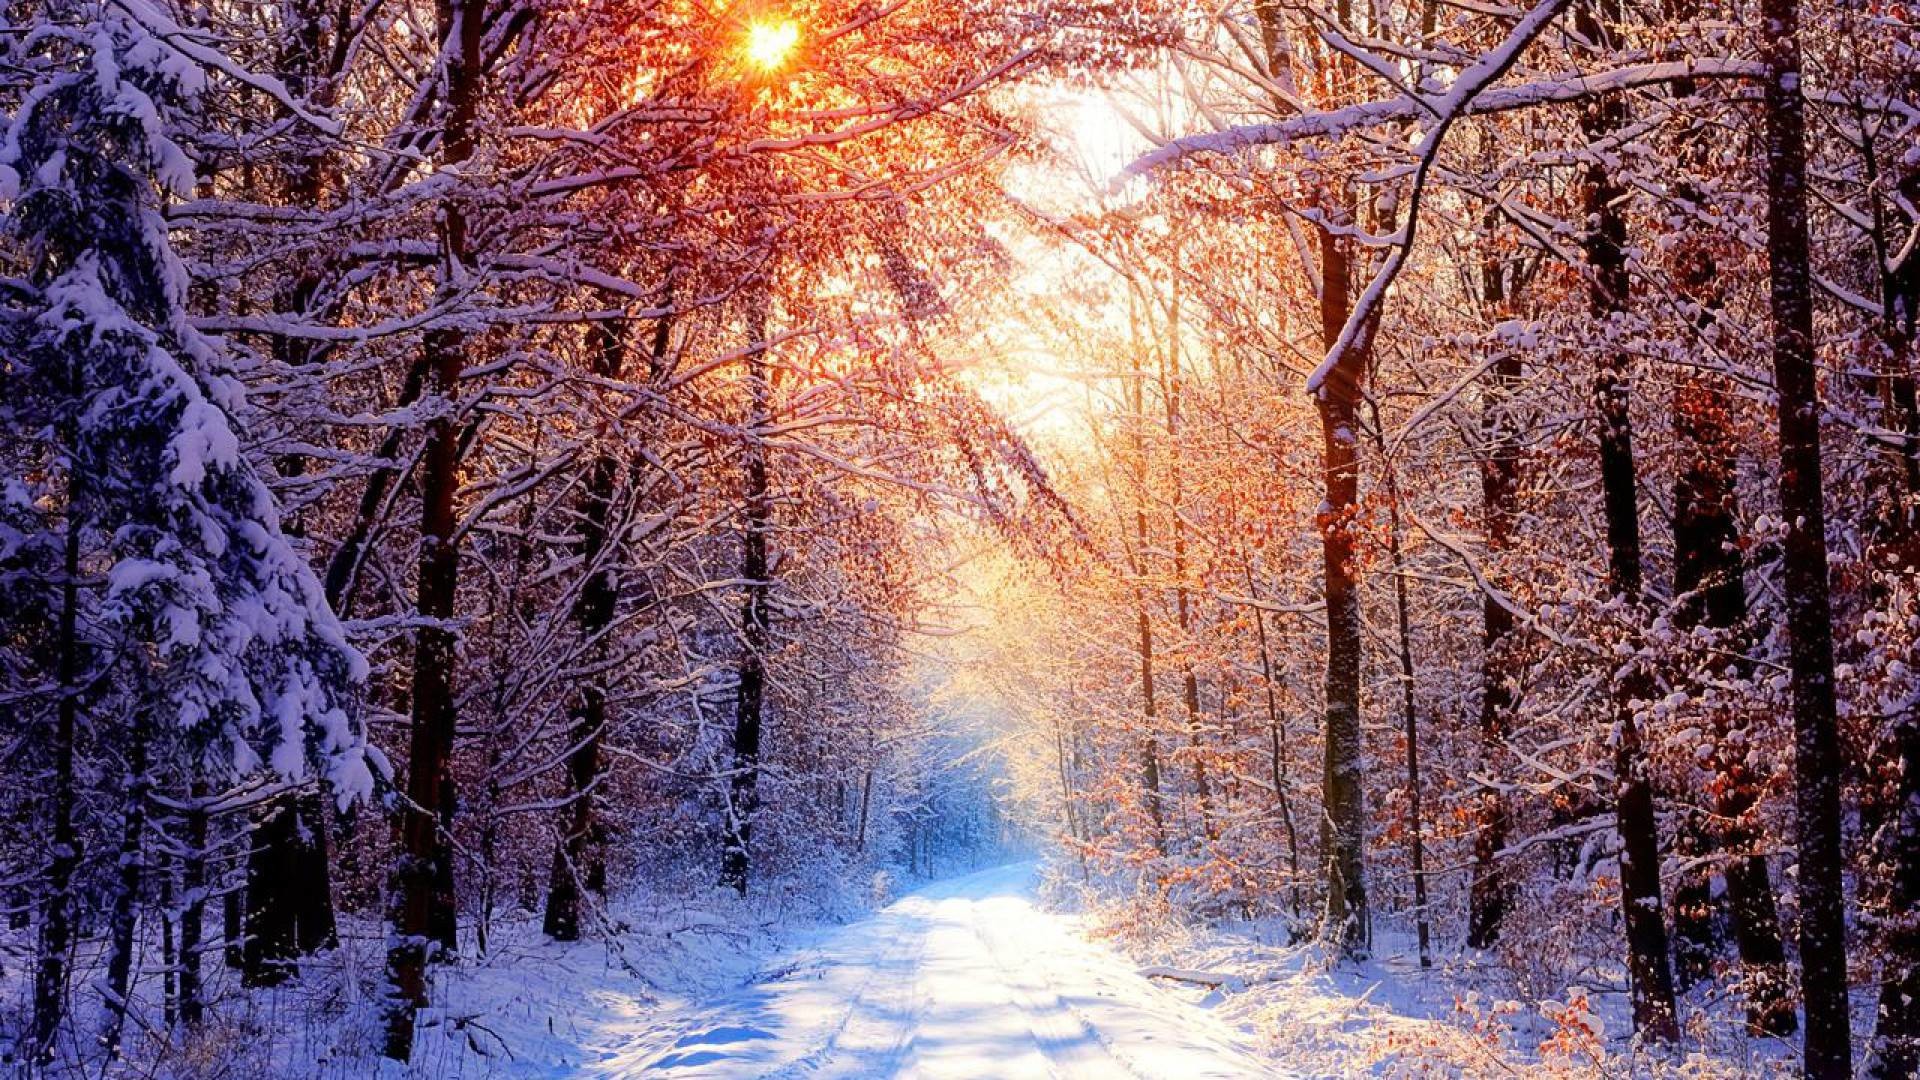 100 Hình ảnh mùa đông tuyết phủ trắng xóa cực đẹp